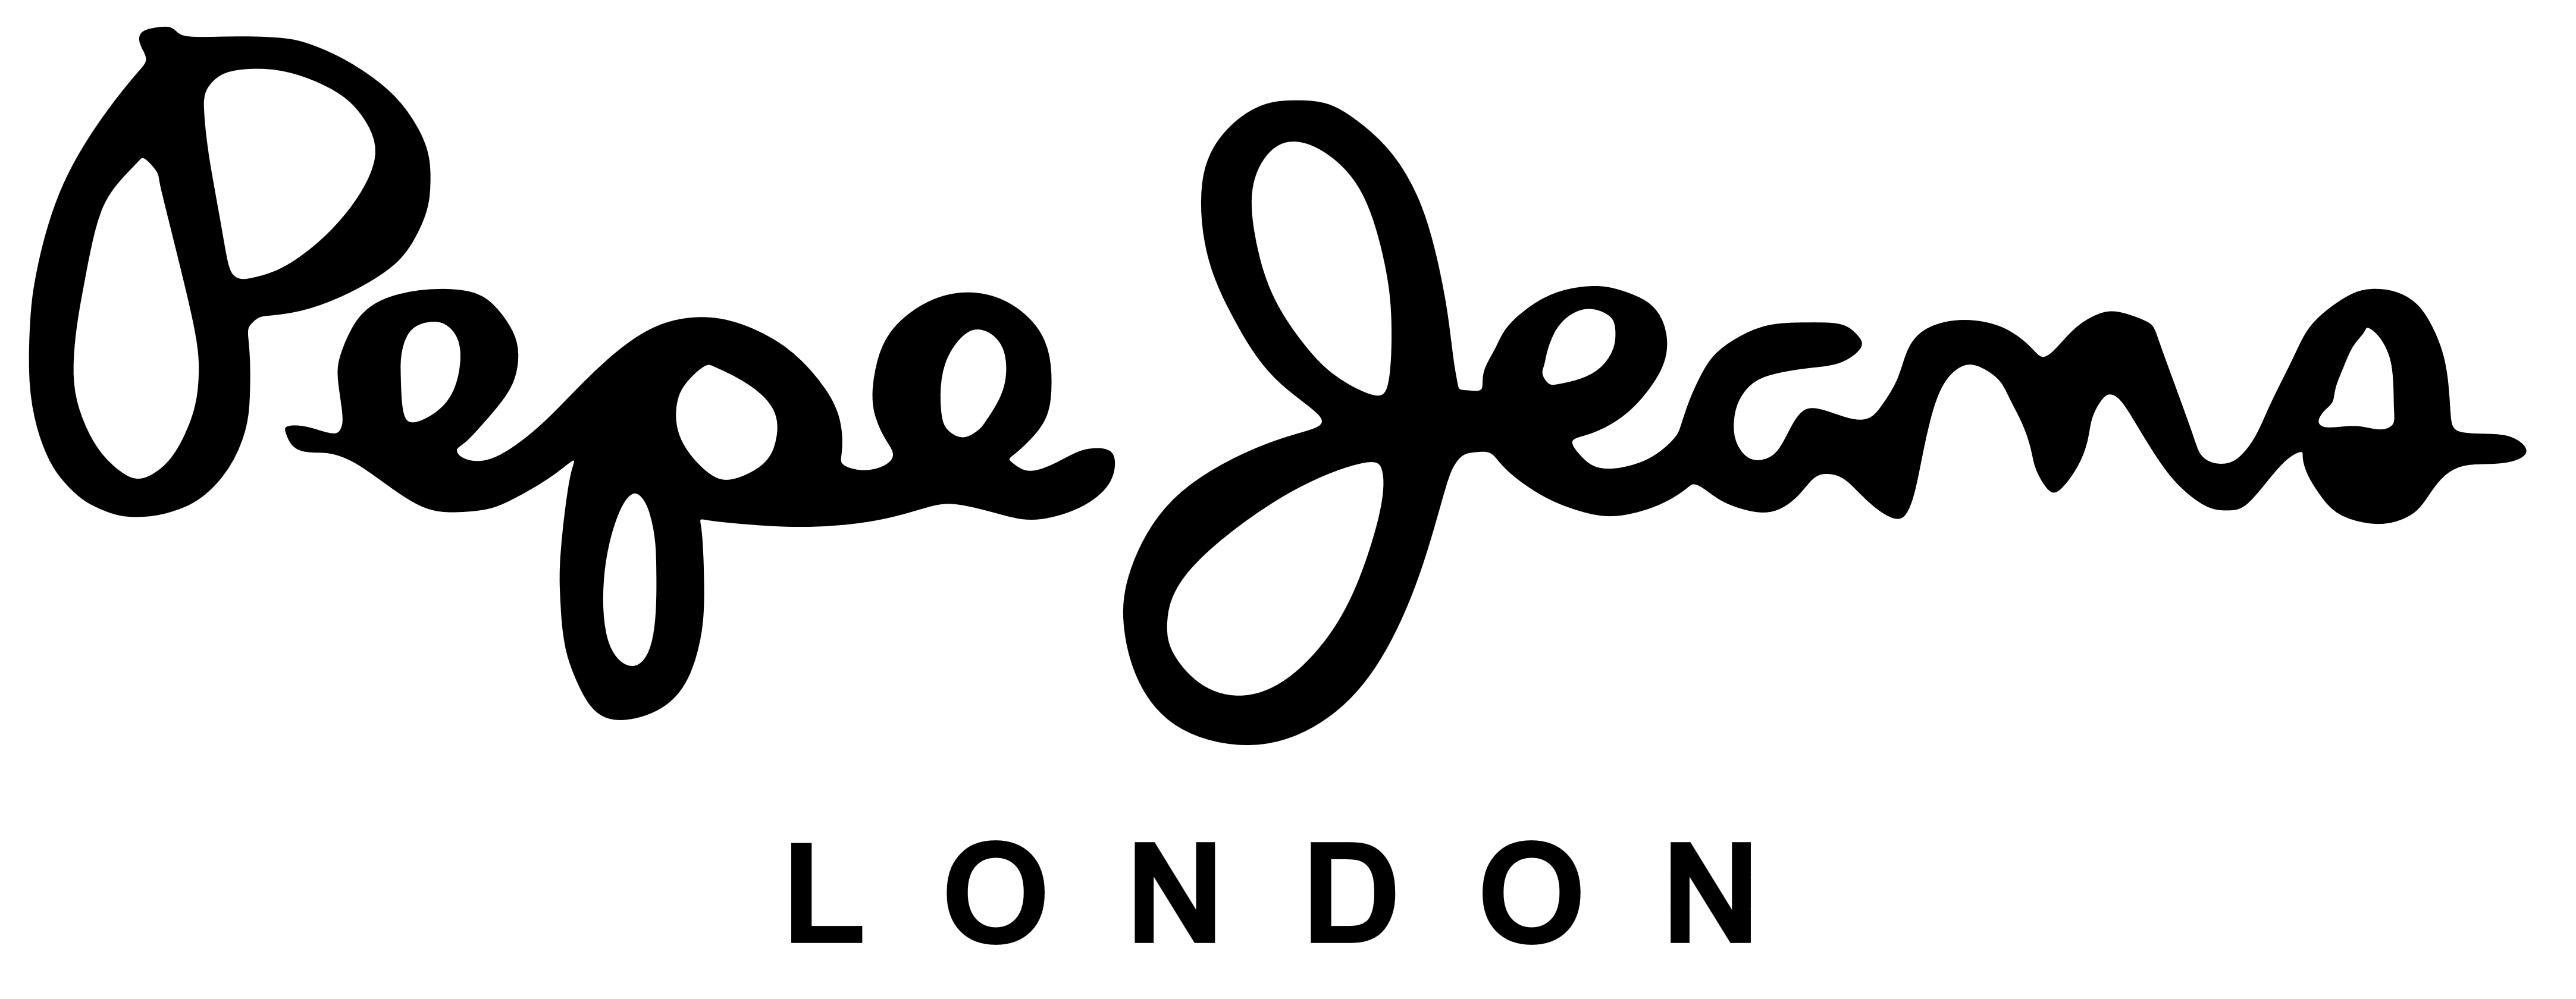 Pepe Jeans logo, logotype